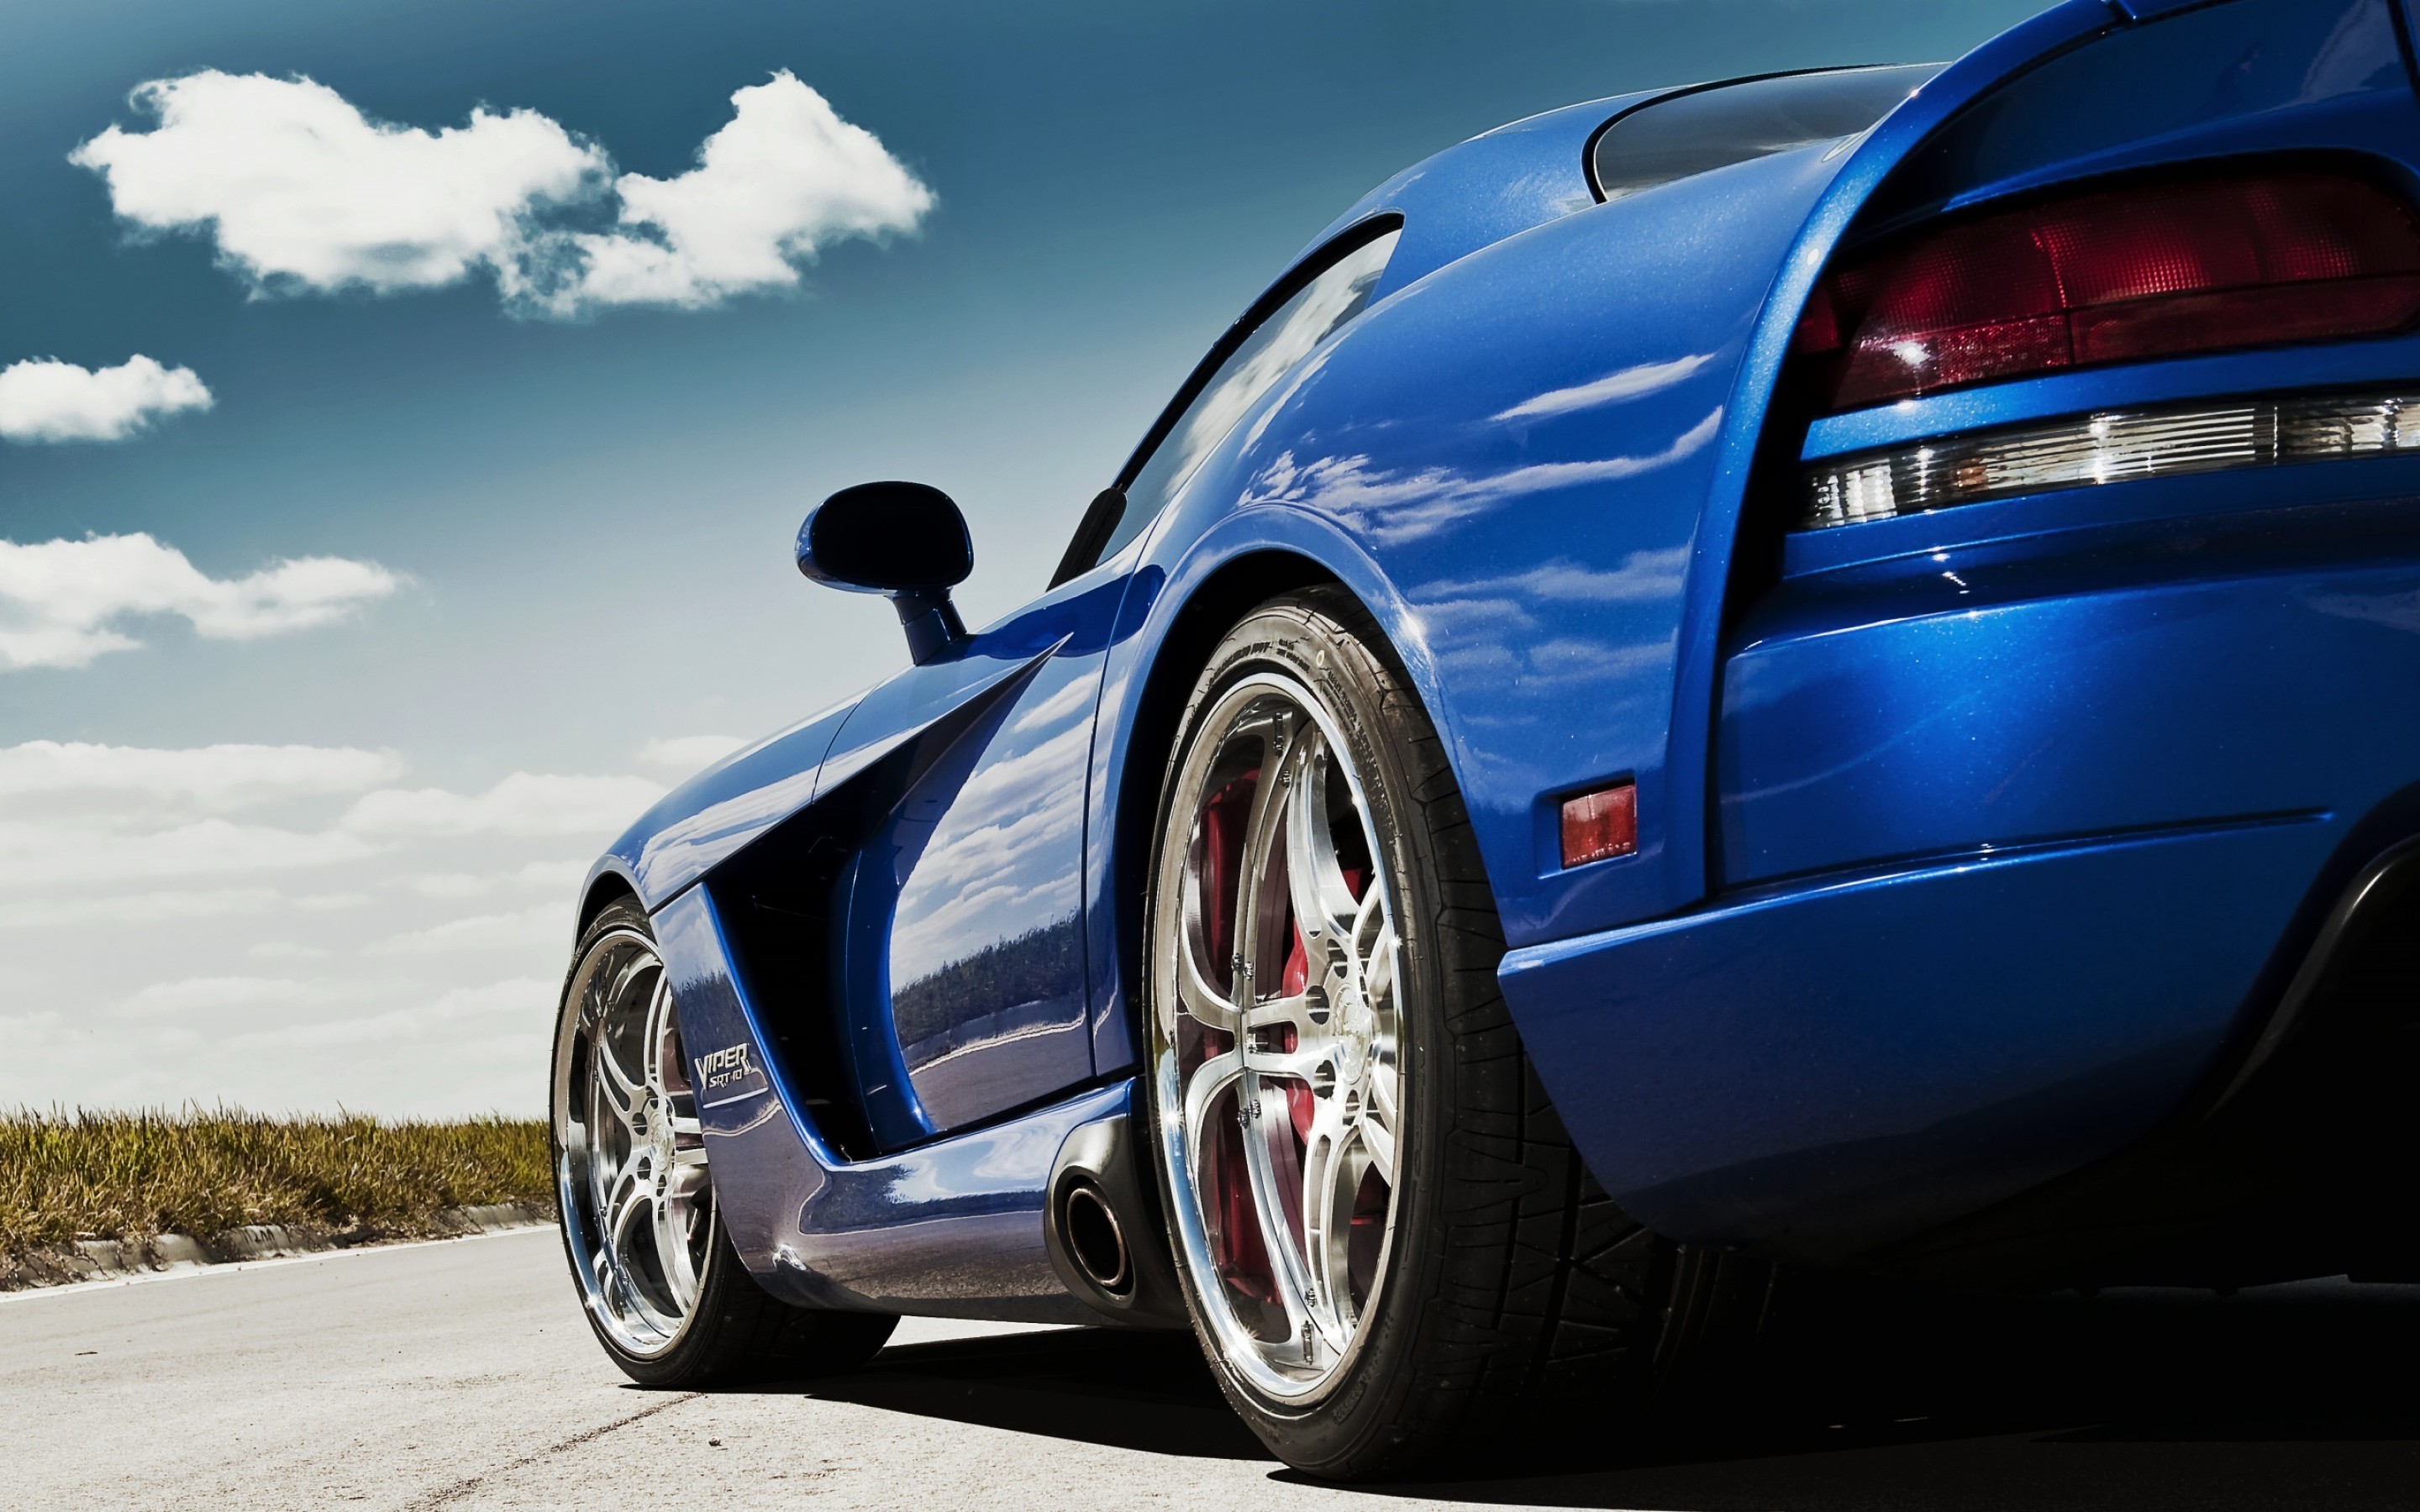 Обои рабочий автомобиль. Красивые машины. Обои автомобили. Спортивные машины. Машины (синяя).